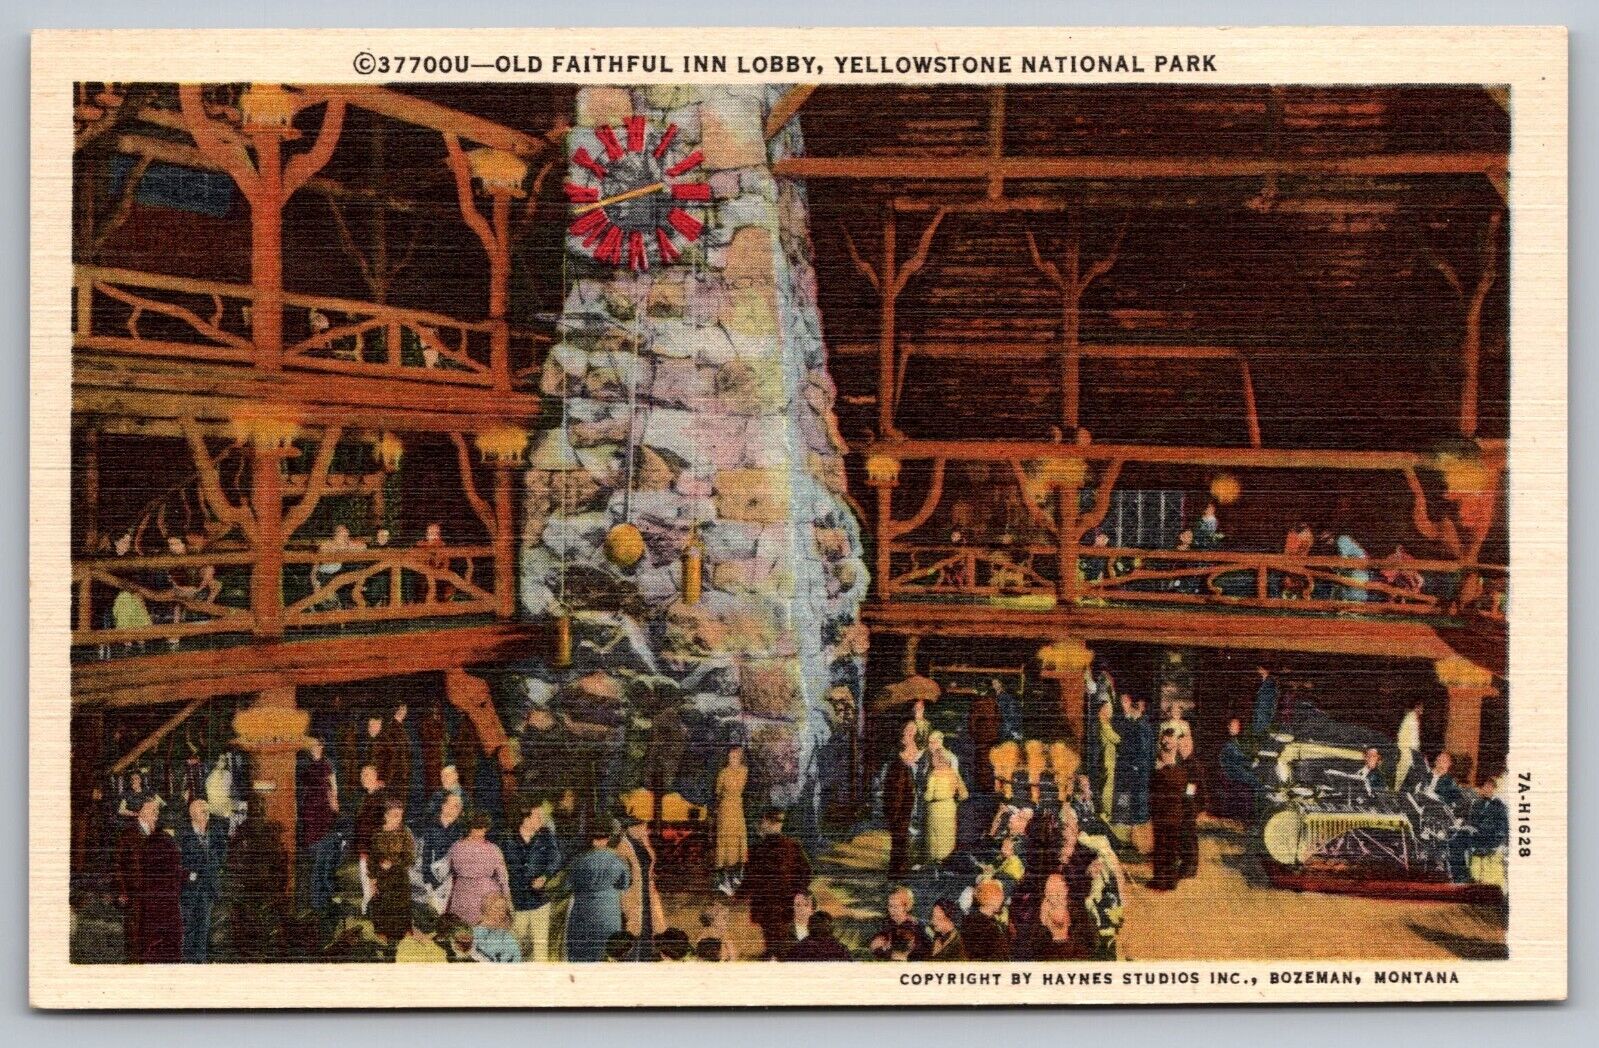 Old Faithful Inn Lobby Yellowstone National Park-Haynes Photo-Vintage Postcard